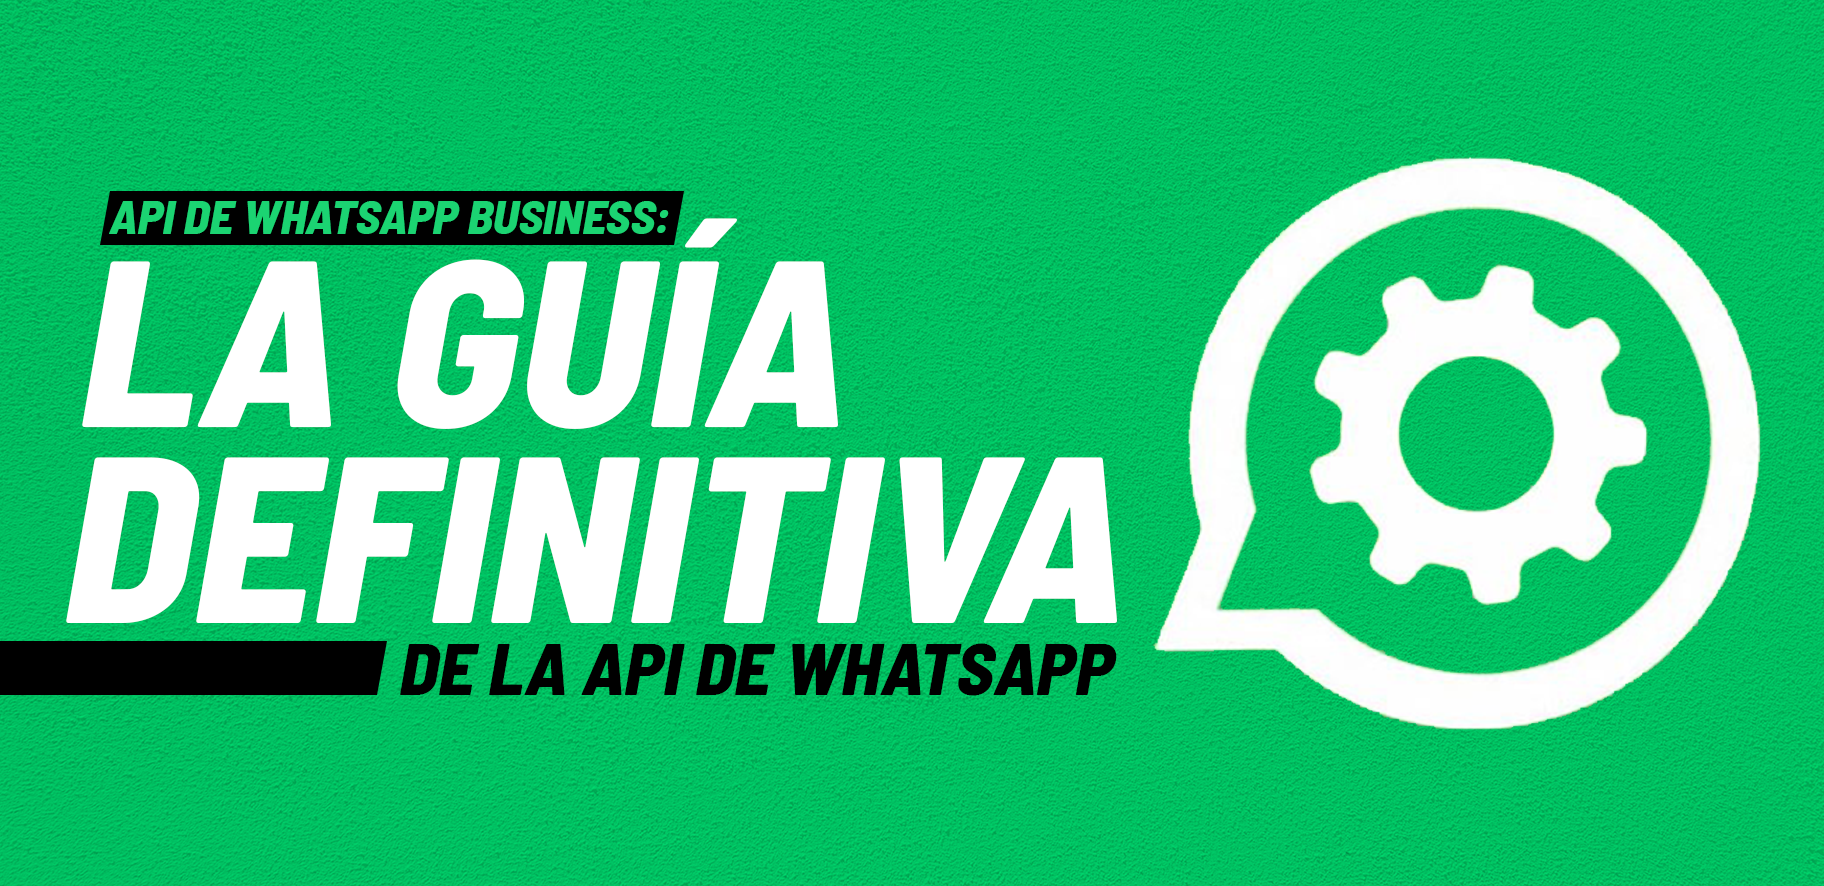 App de WhatsApp para empresas: La guía definitiva